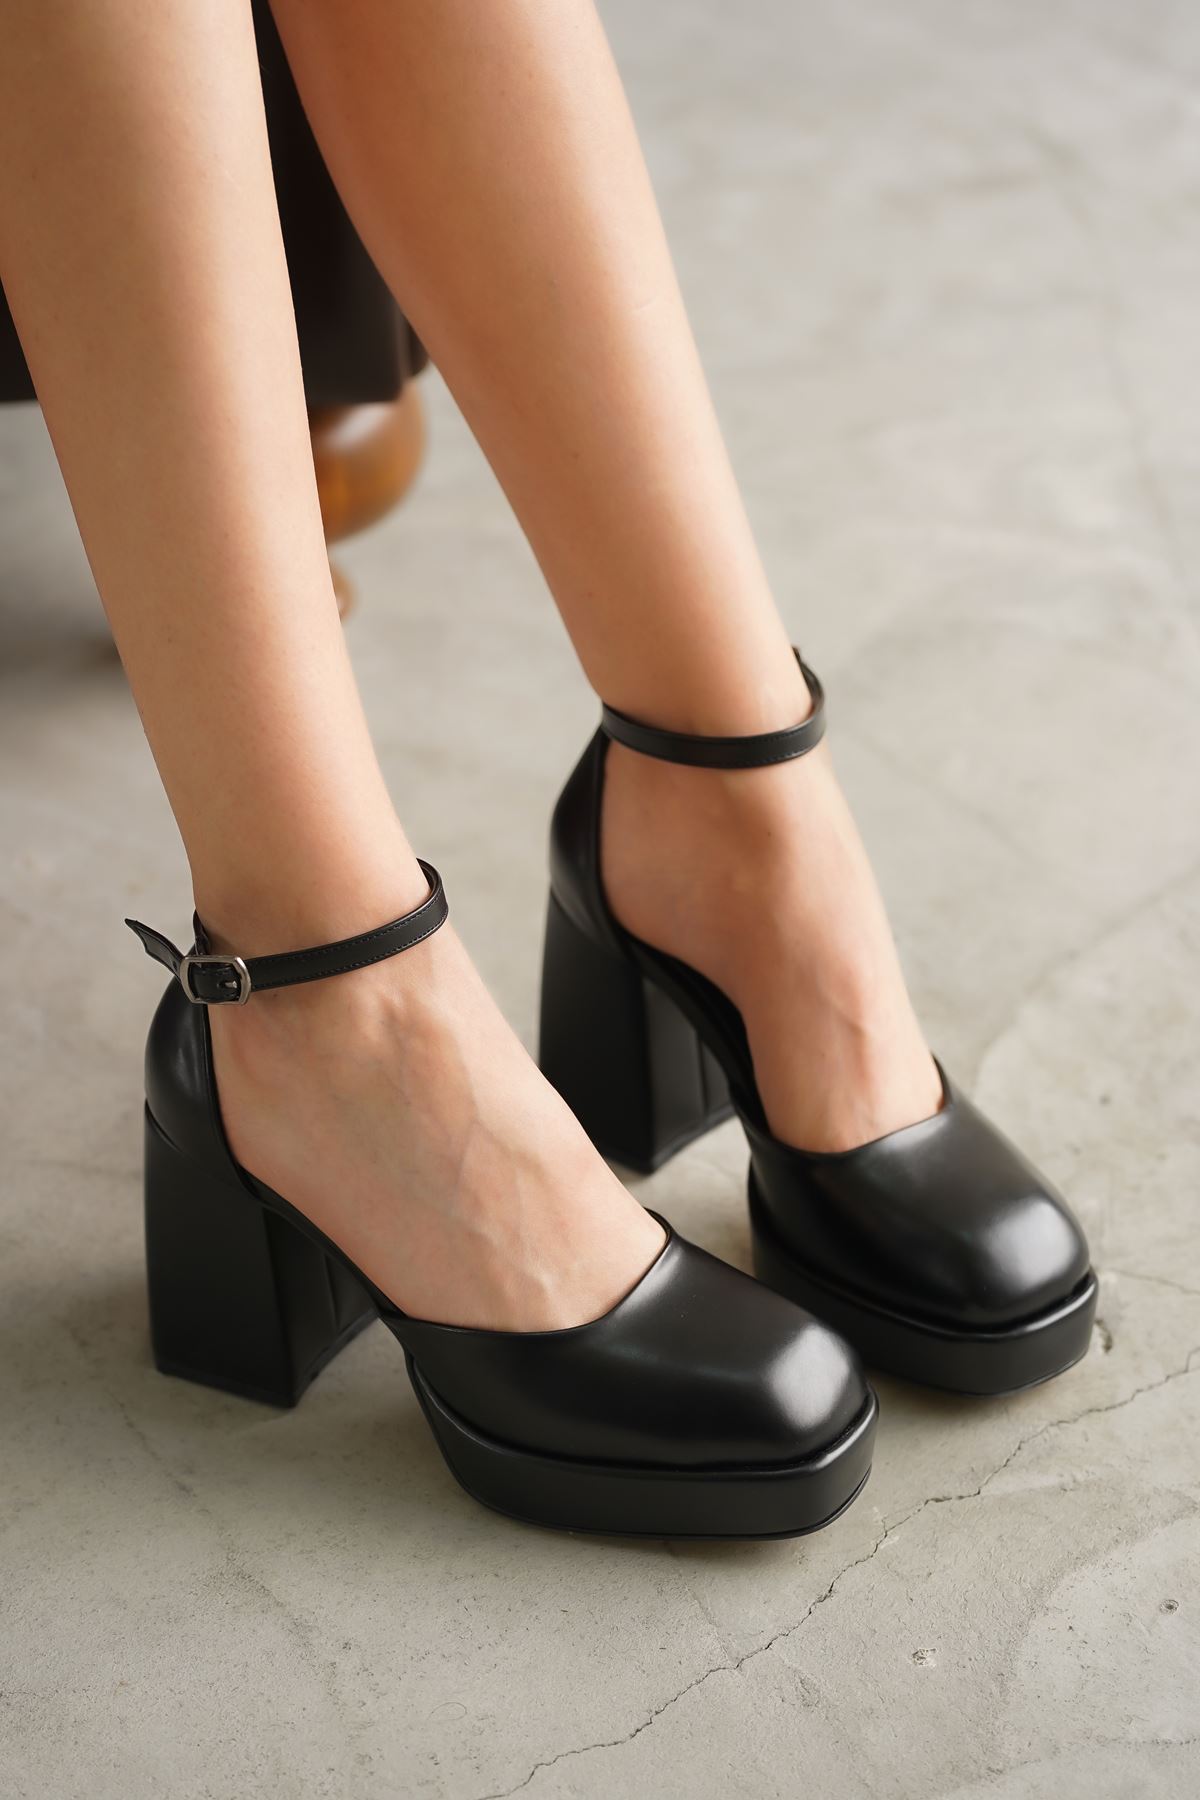 Kadın Gander Platformlu Topuklu Ayakkabı - siyah-deri